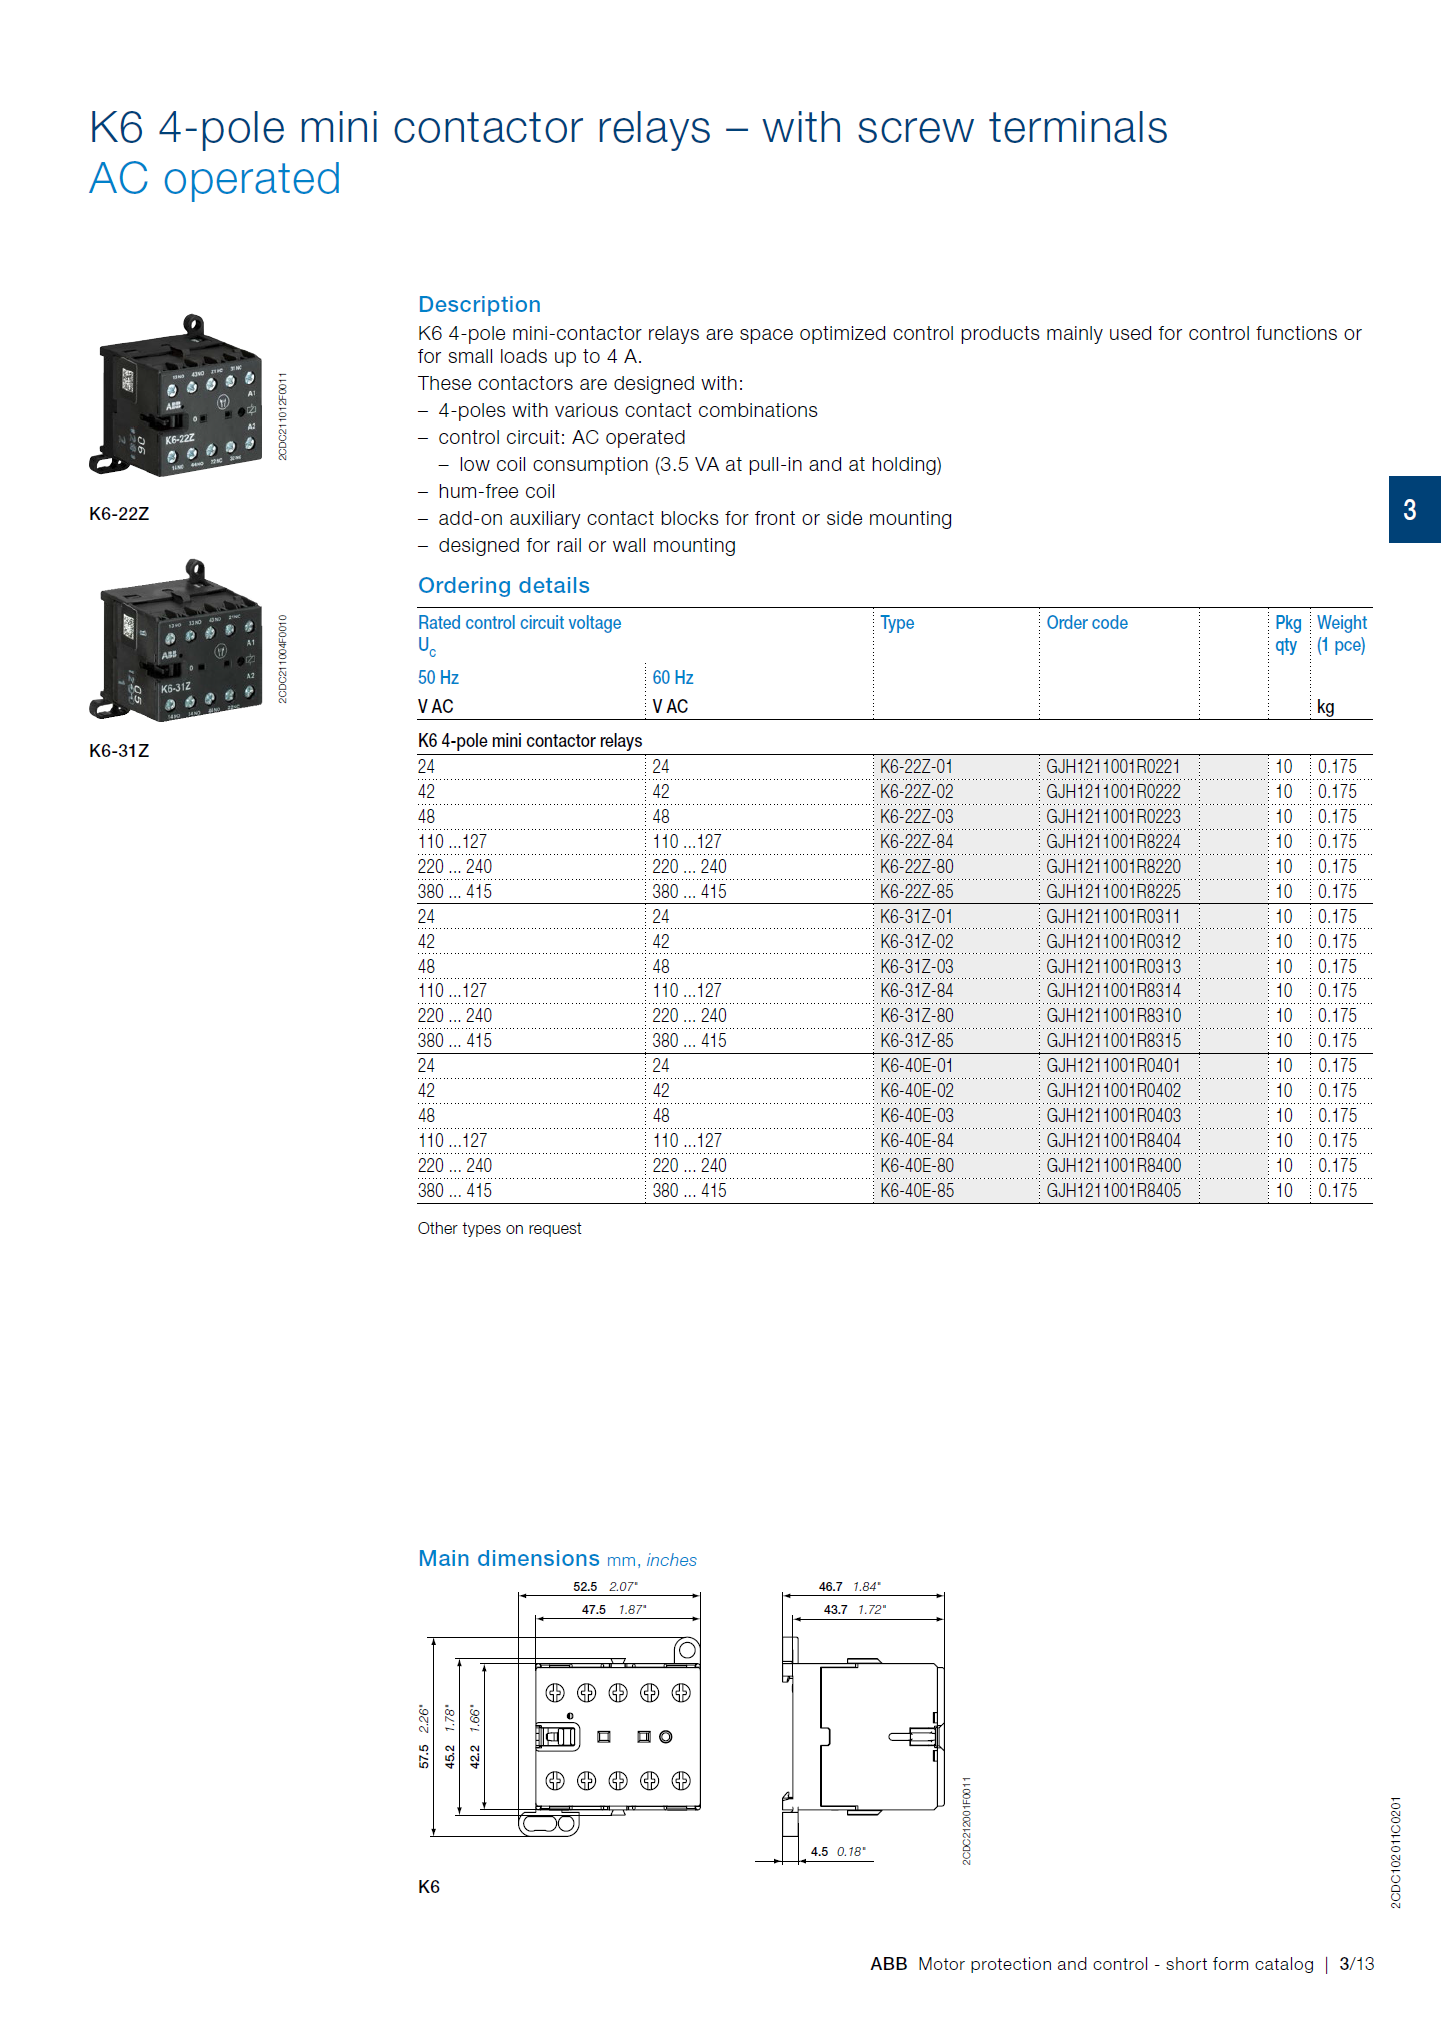 ABB B6, B7 series mini contactors: B7S-30-10-2.8 / GJL1313001R7102